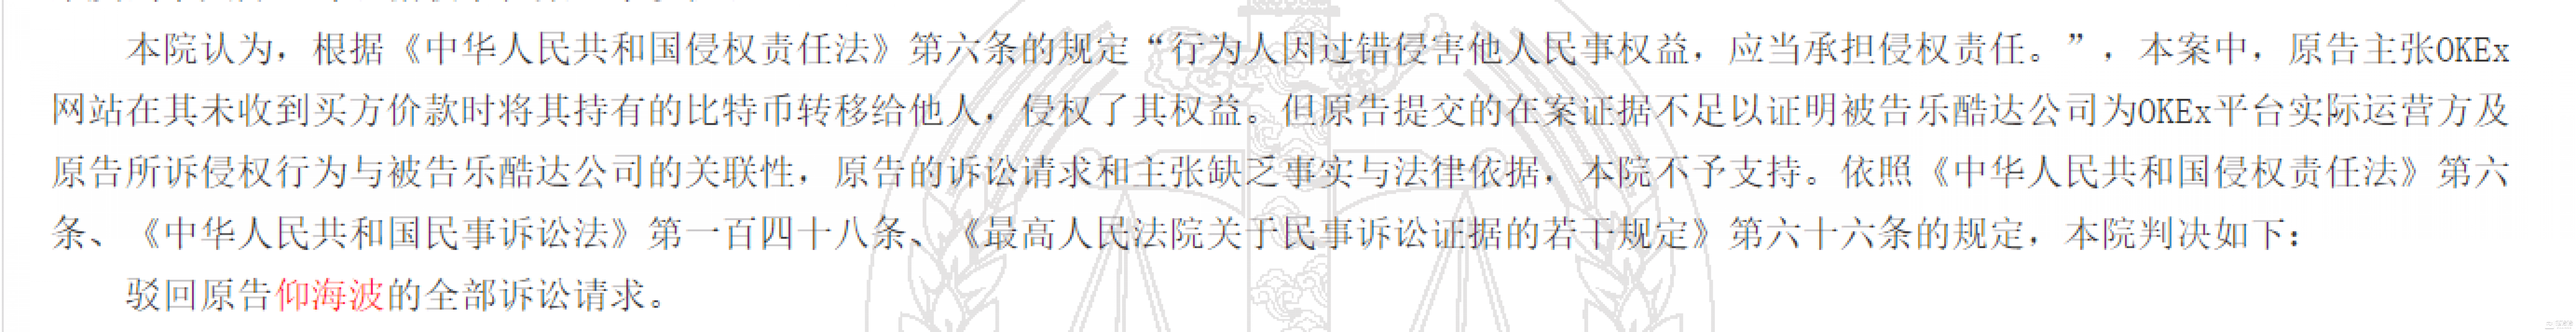 【链得得深度】杭州中院裁定OKEx、OKCoin与乐酷达公司有关，徐明星“合规保护”或失效_案件